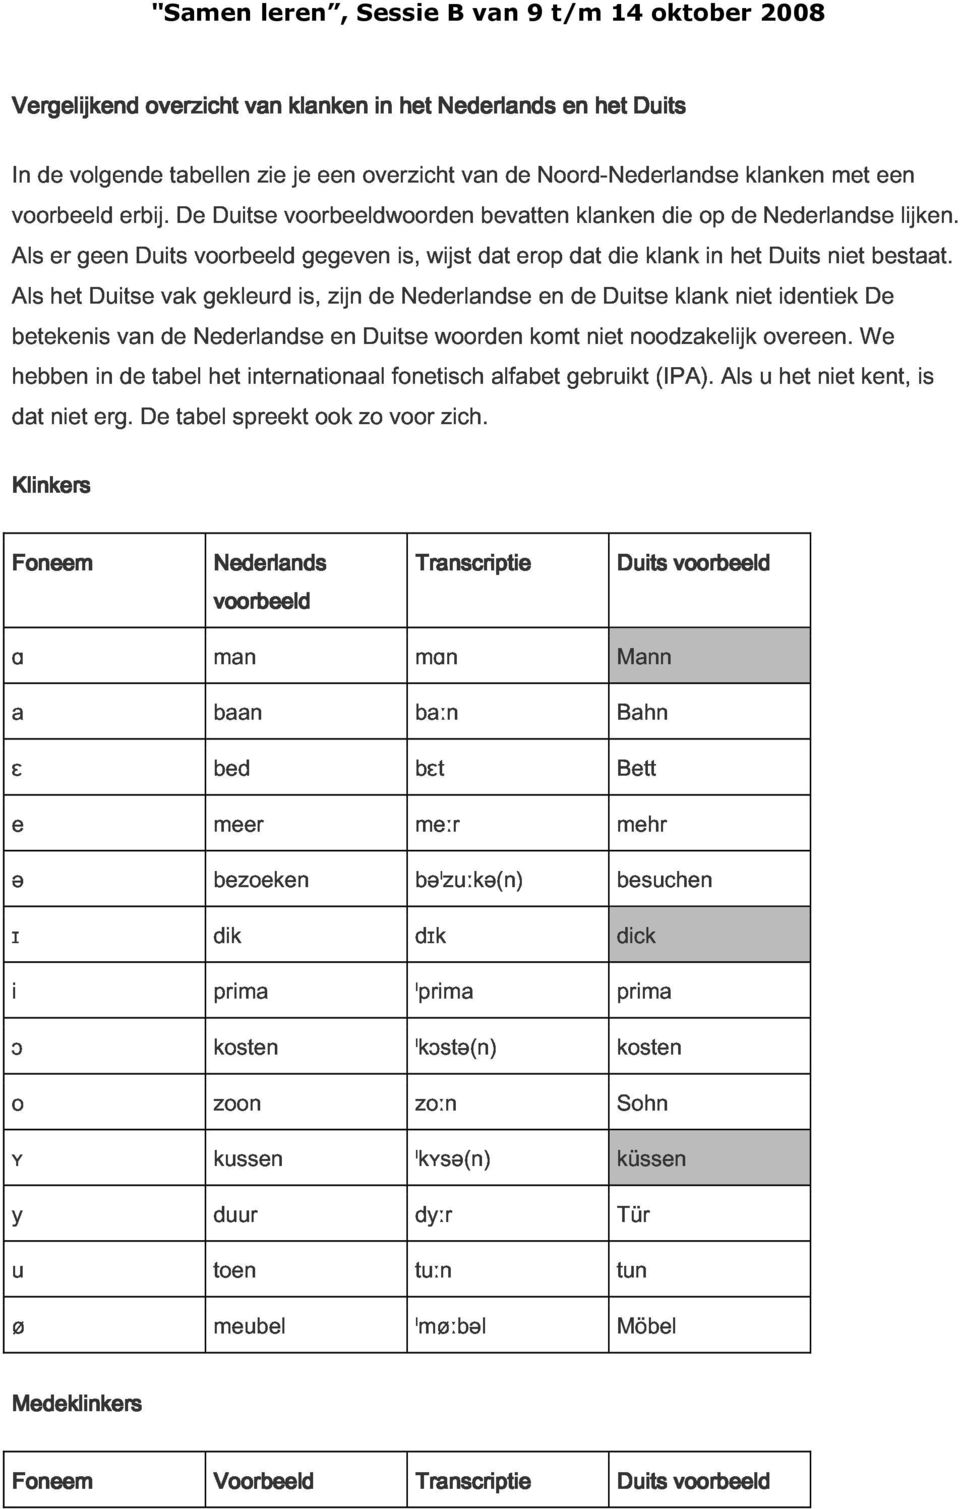 identiek niet De bestaat. lijken. betekenis hebben dat niet erg. in van de De tabel de tabel Nederlandse het spreekt internationaal ook en zo Duitse voor fonetisch woorden zich.